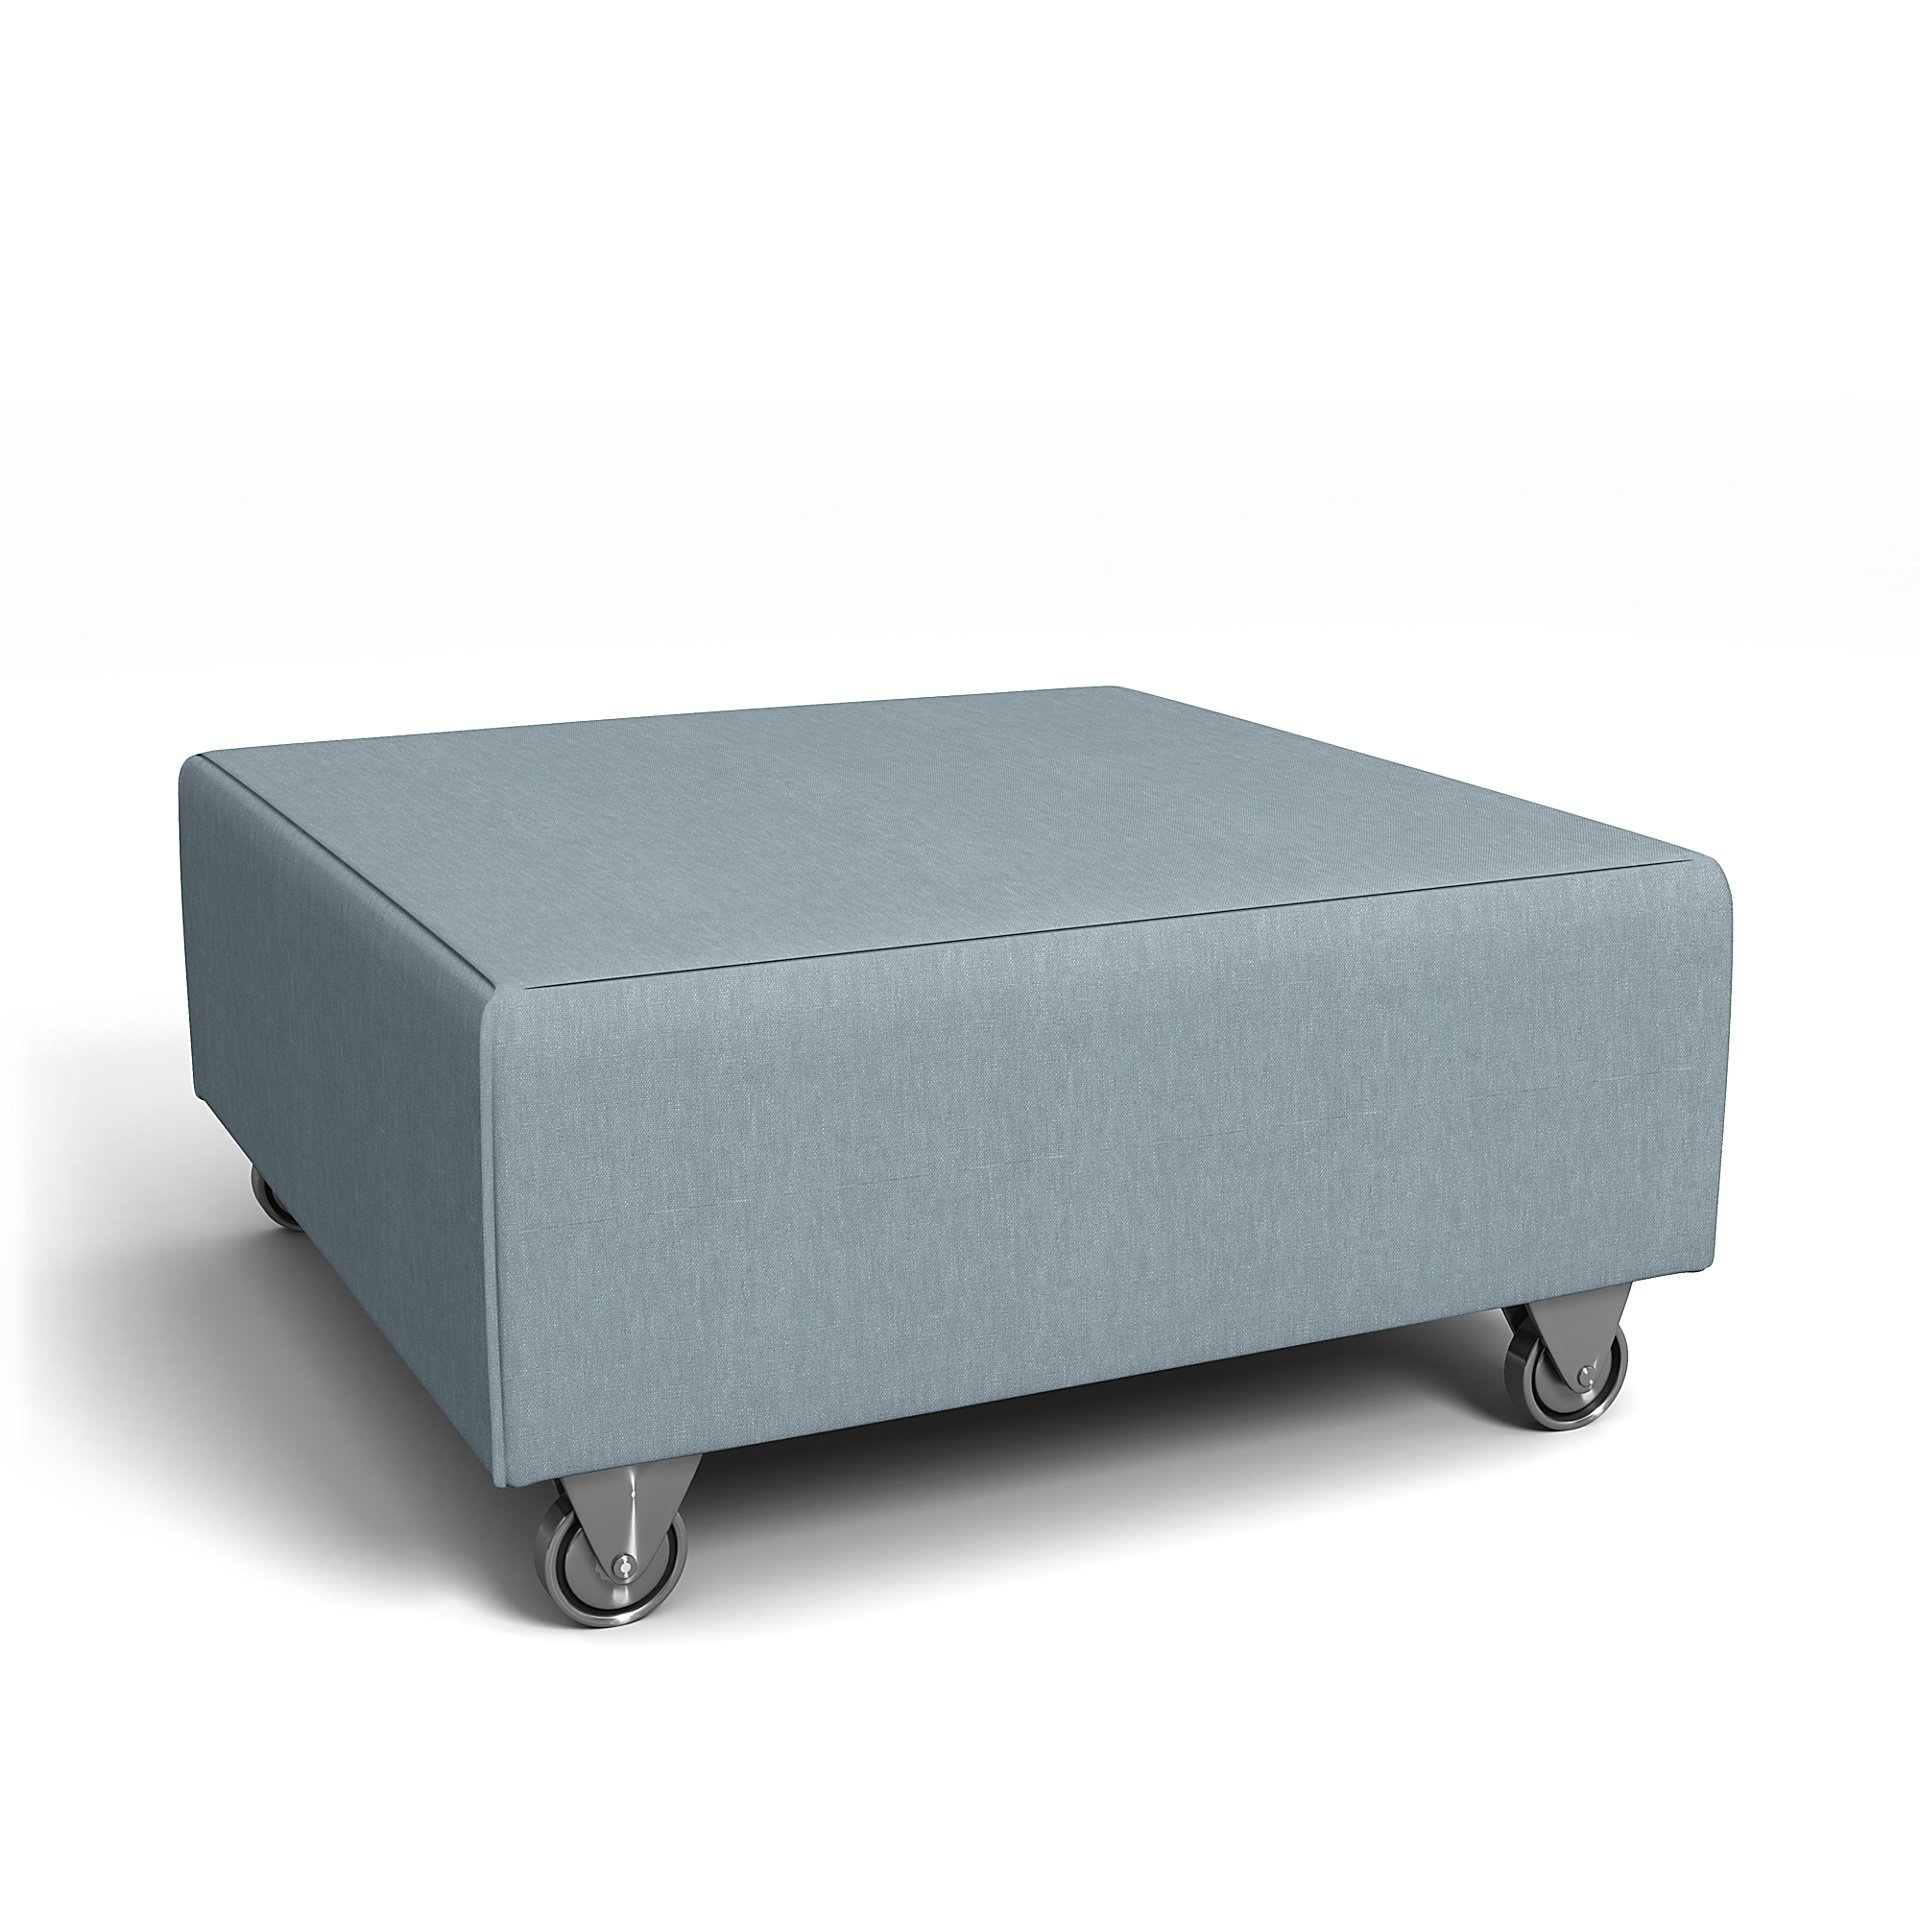 IKEA - Falsterbo Footstool Cover, Dusty Blue, Linen - Bemz